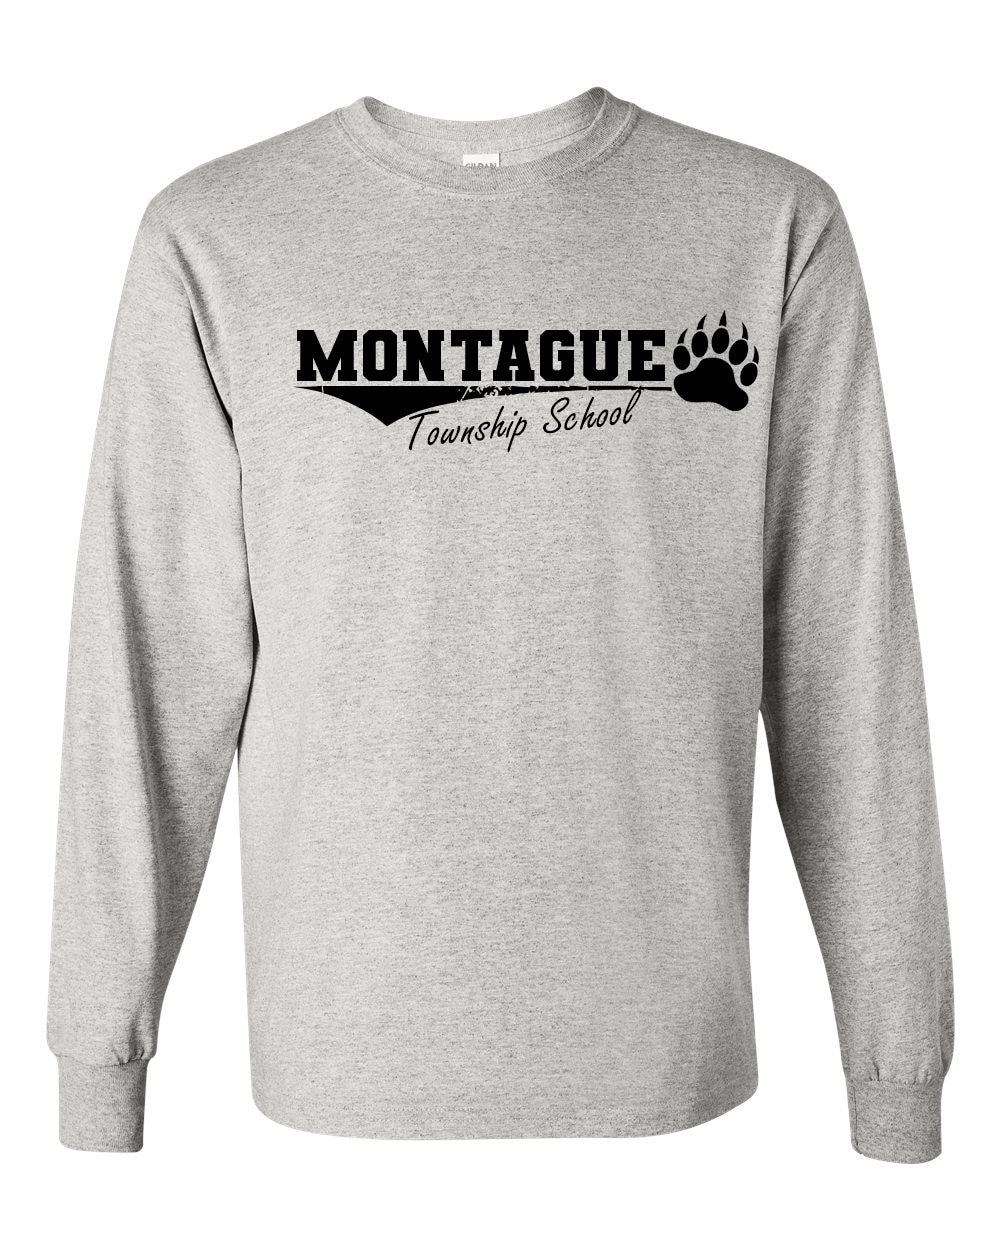 Montague Design 1 Long Sleeve Shirt